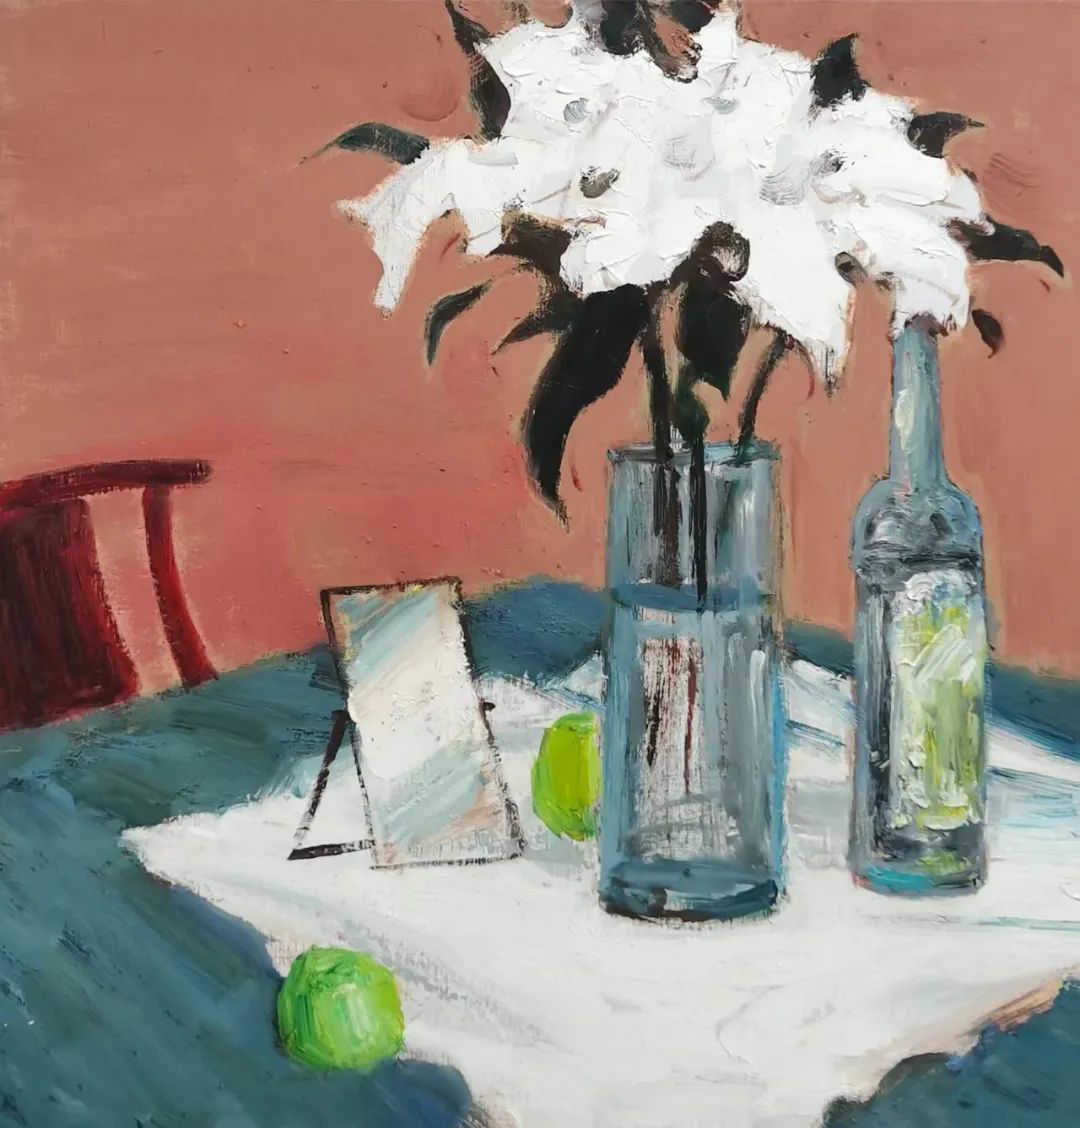 静候永恒——岳海涛《出场》系列油画作品中生命的节律与诗意